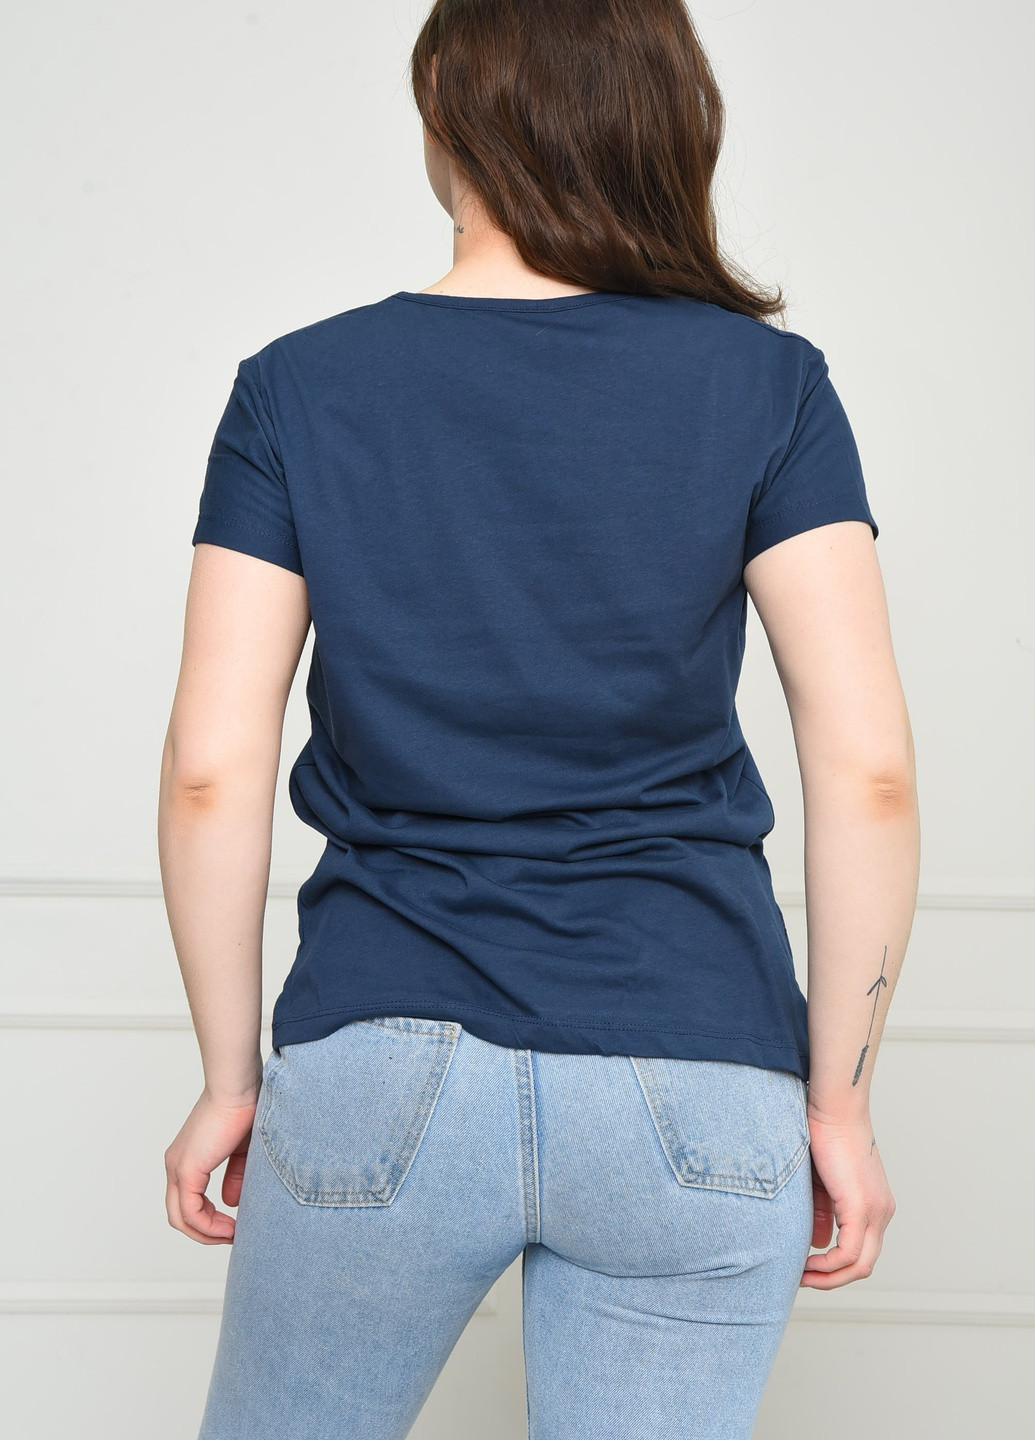 Темно-синяя летняя футболка женская темно-синего цвета Let's Shop